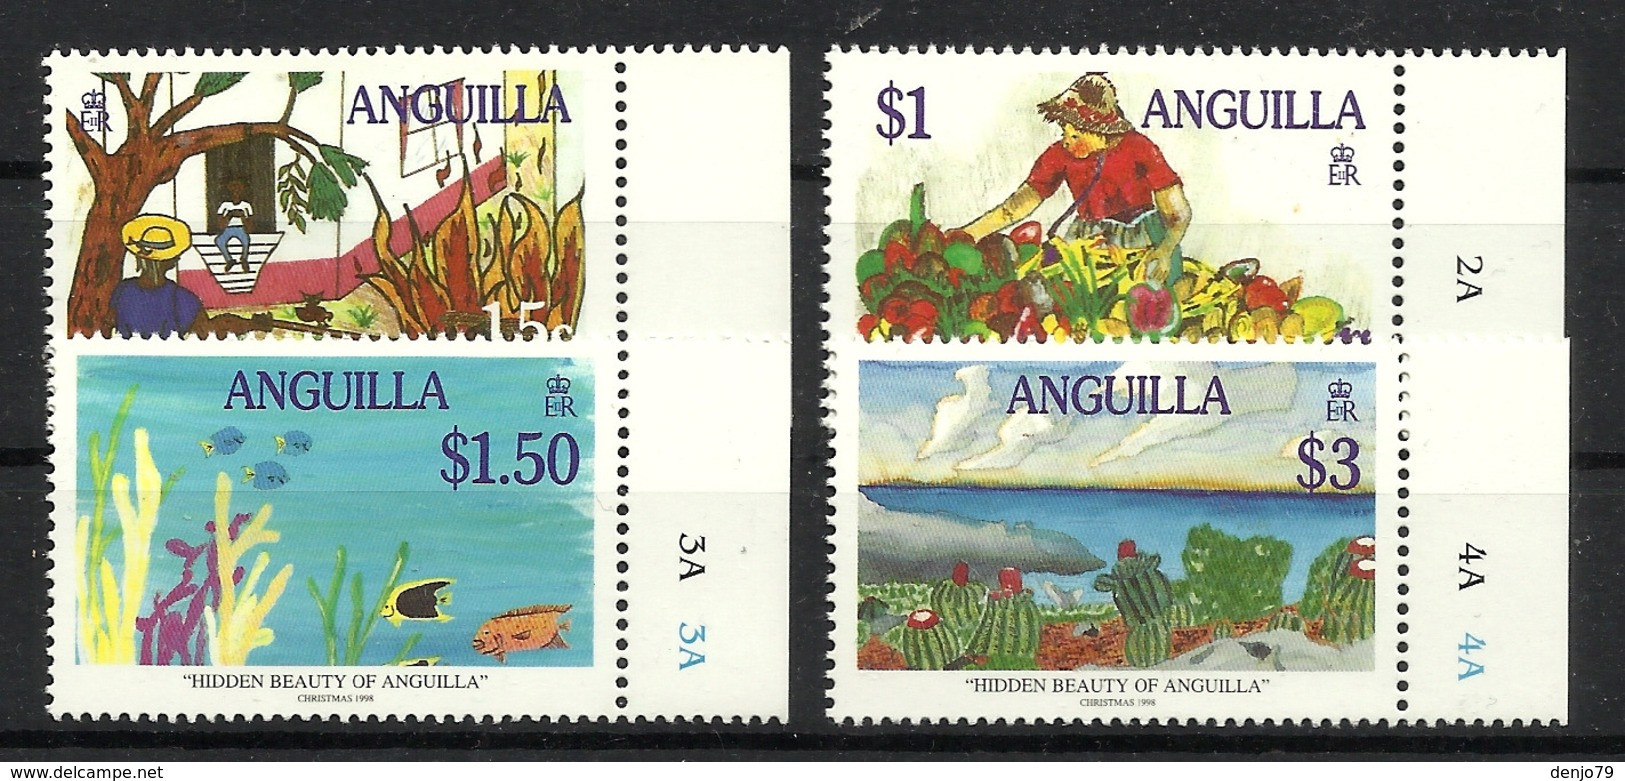 ANGUILLA 1998  CHRISTMAS,HIDDEN BEAUTY OF ANGUILLA, PAINTINGS SET MNH - Anguilla (1968-...)